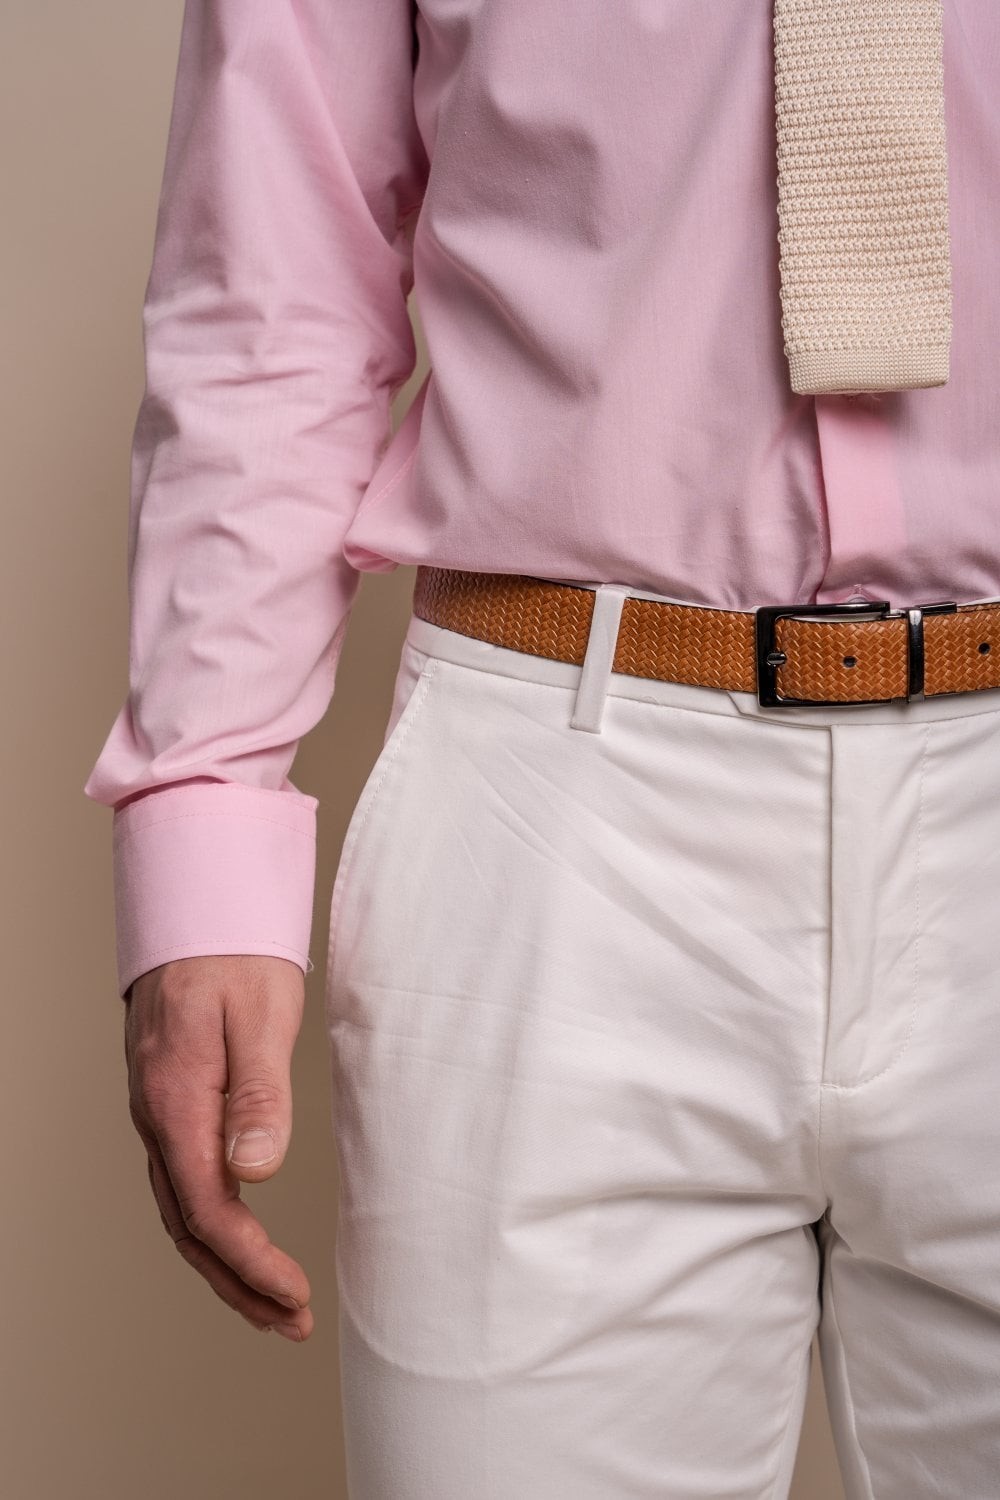 Pantalon Formel Slim Fit en Coton pour Homme - MARIO